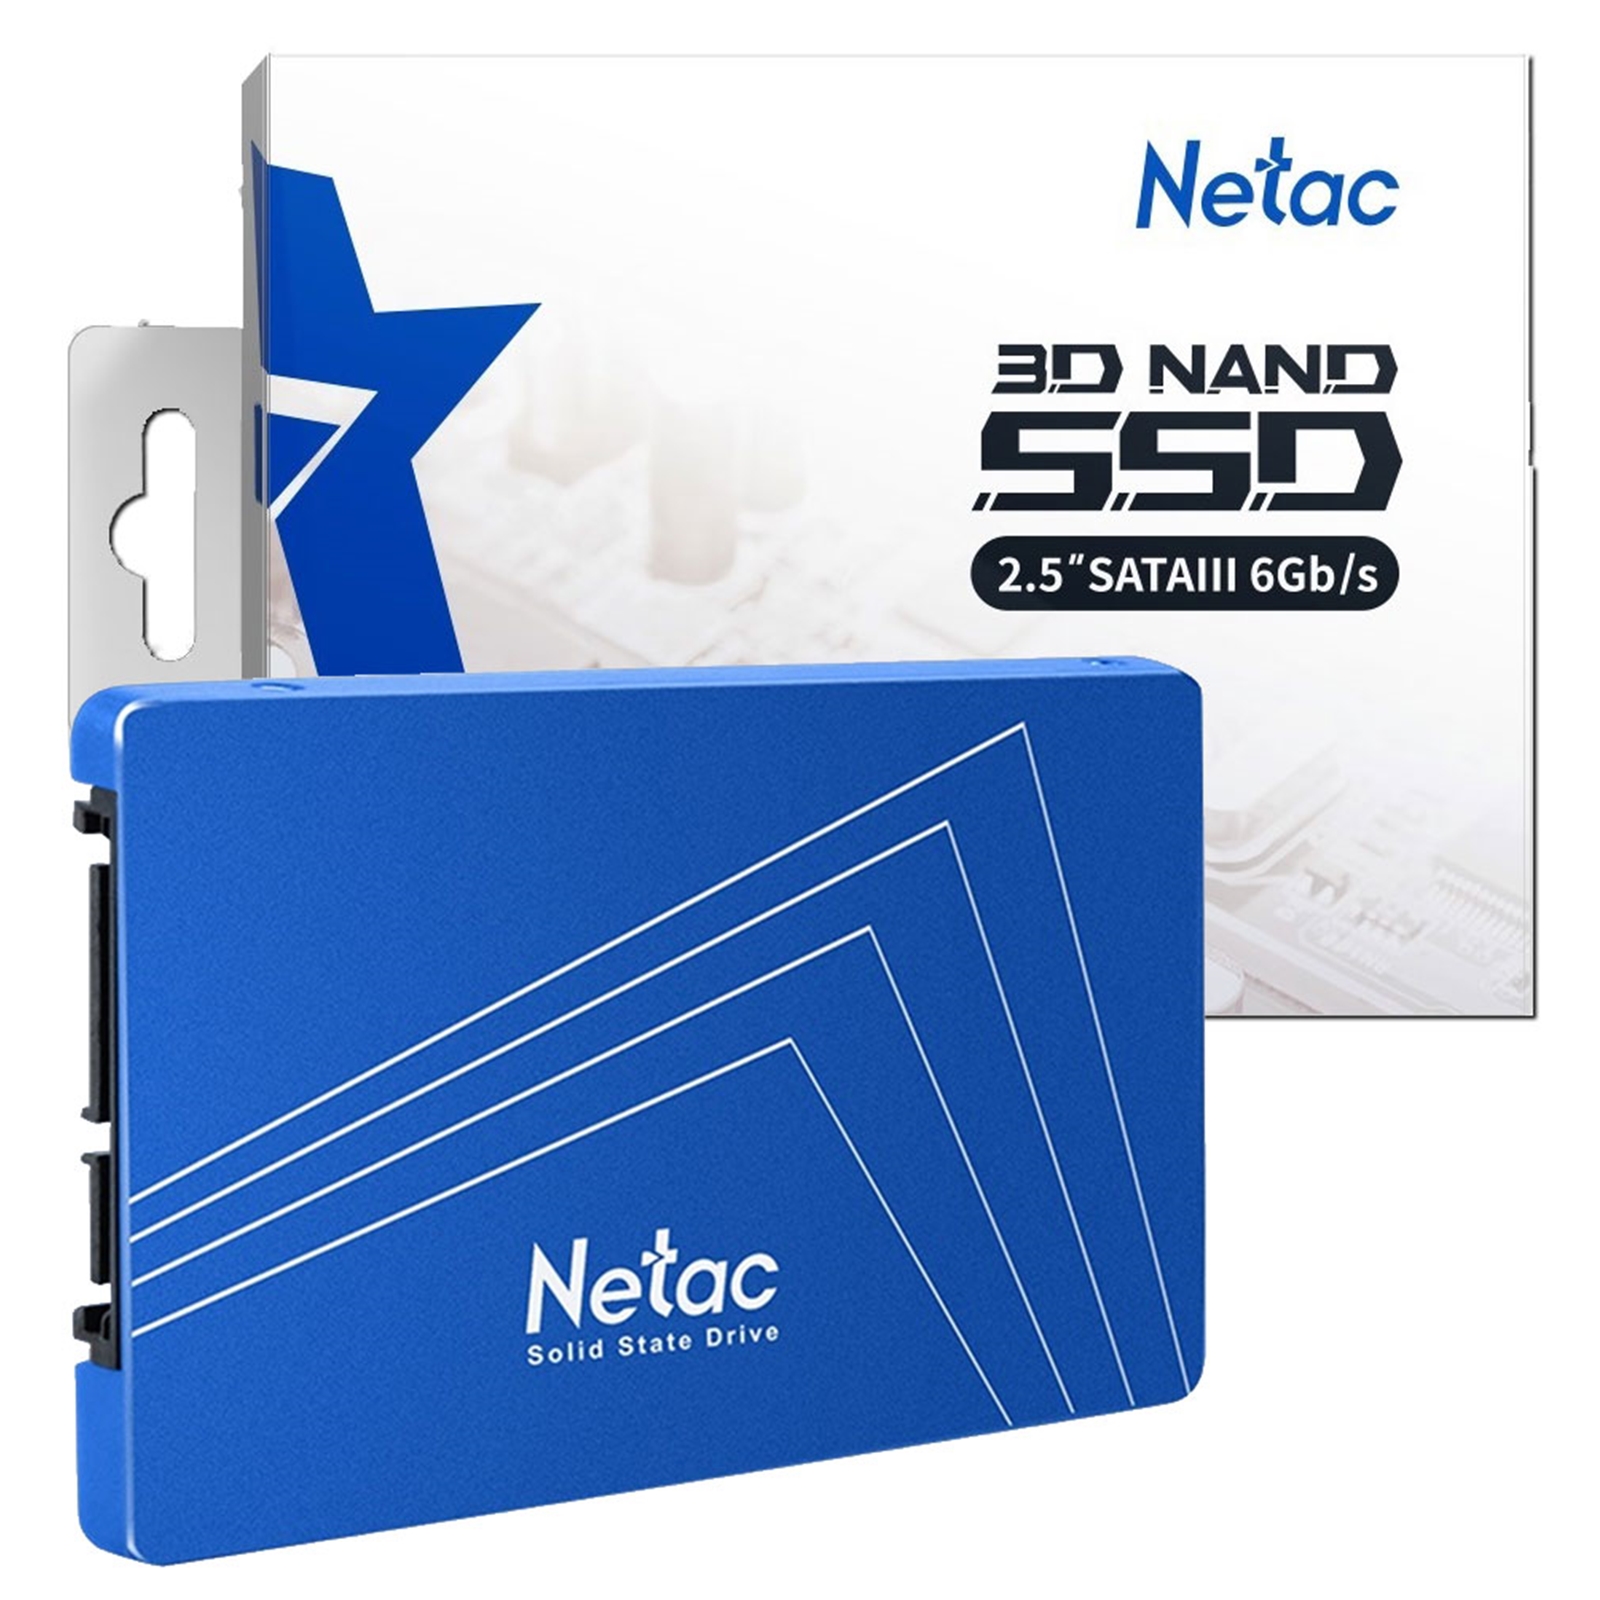 Netac 256GB 2.5 SATA III SSD